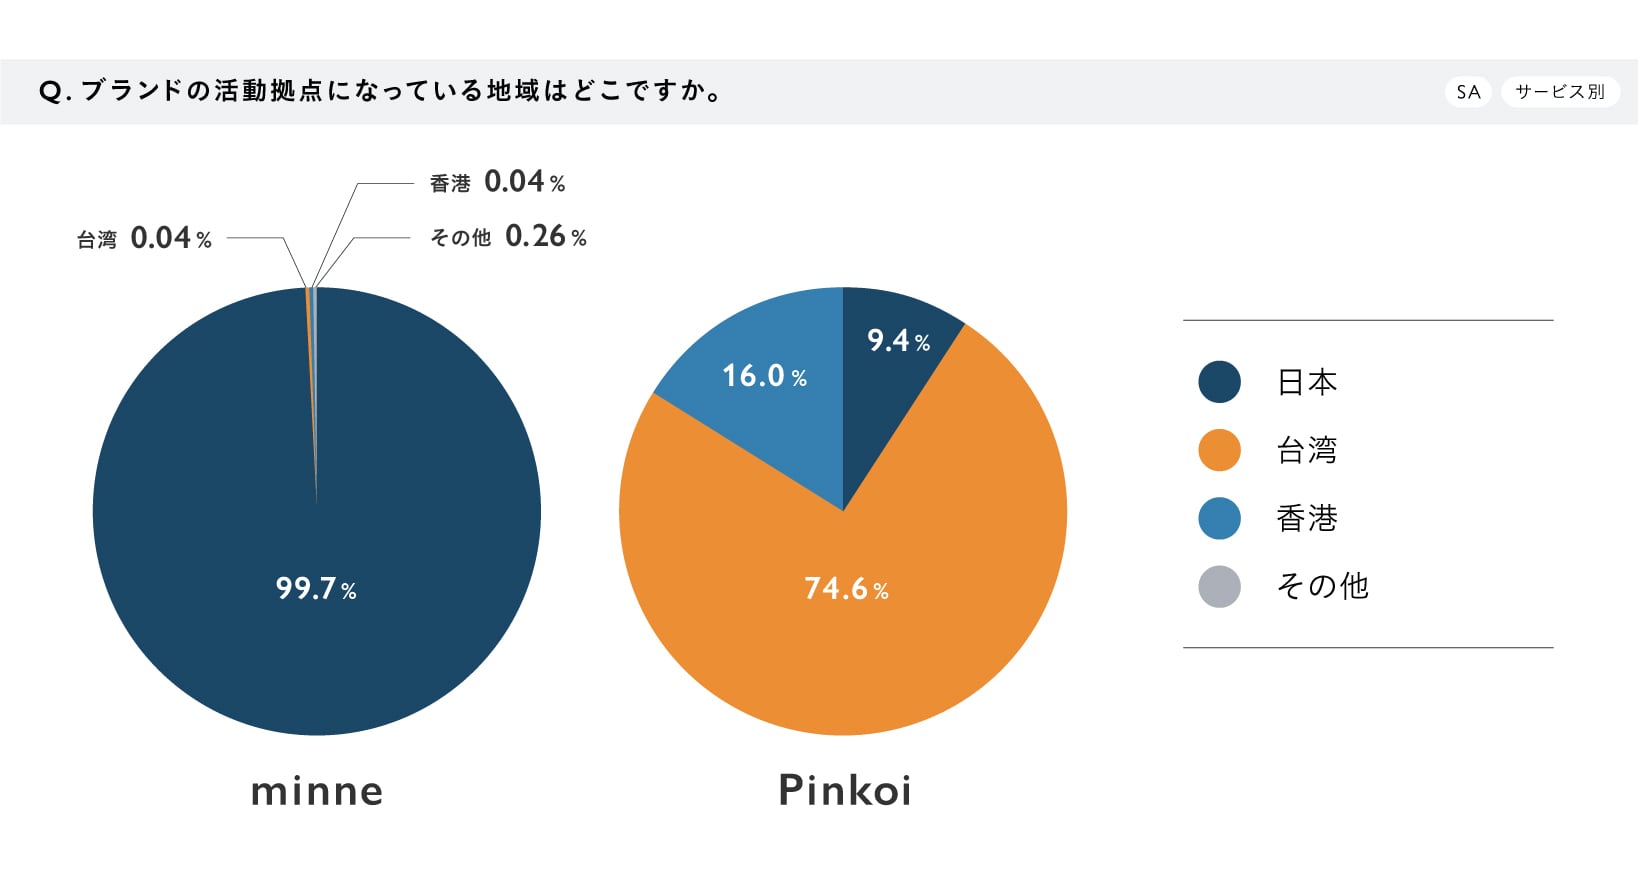 【調査結果グラフ】『作り手の海外展開・販売に関する意識調査』Q1.ブランドの活動拠点になっている地域はどこですか。（SA／サービス別） A.＜minne＞日本99.7%、台湾0.04%、香港0.04%、その他0.26%　＜Pinkoi＞台湾74.6%、香港16.0%、日本9.4%